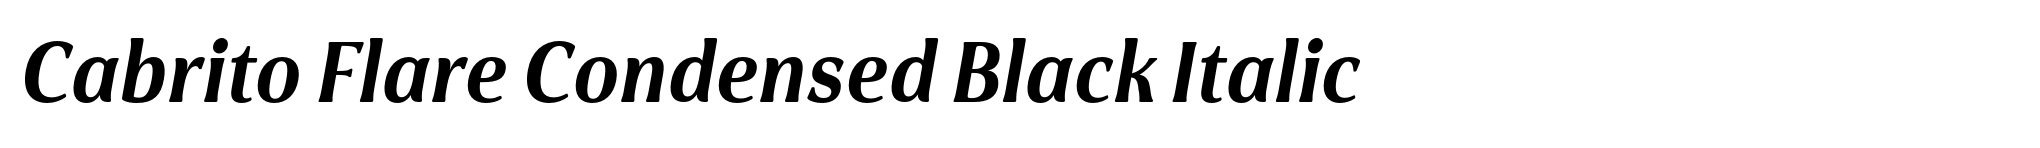 Cabrito Flare Condensed Black Italic image